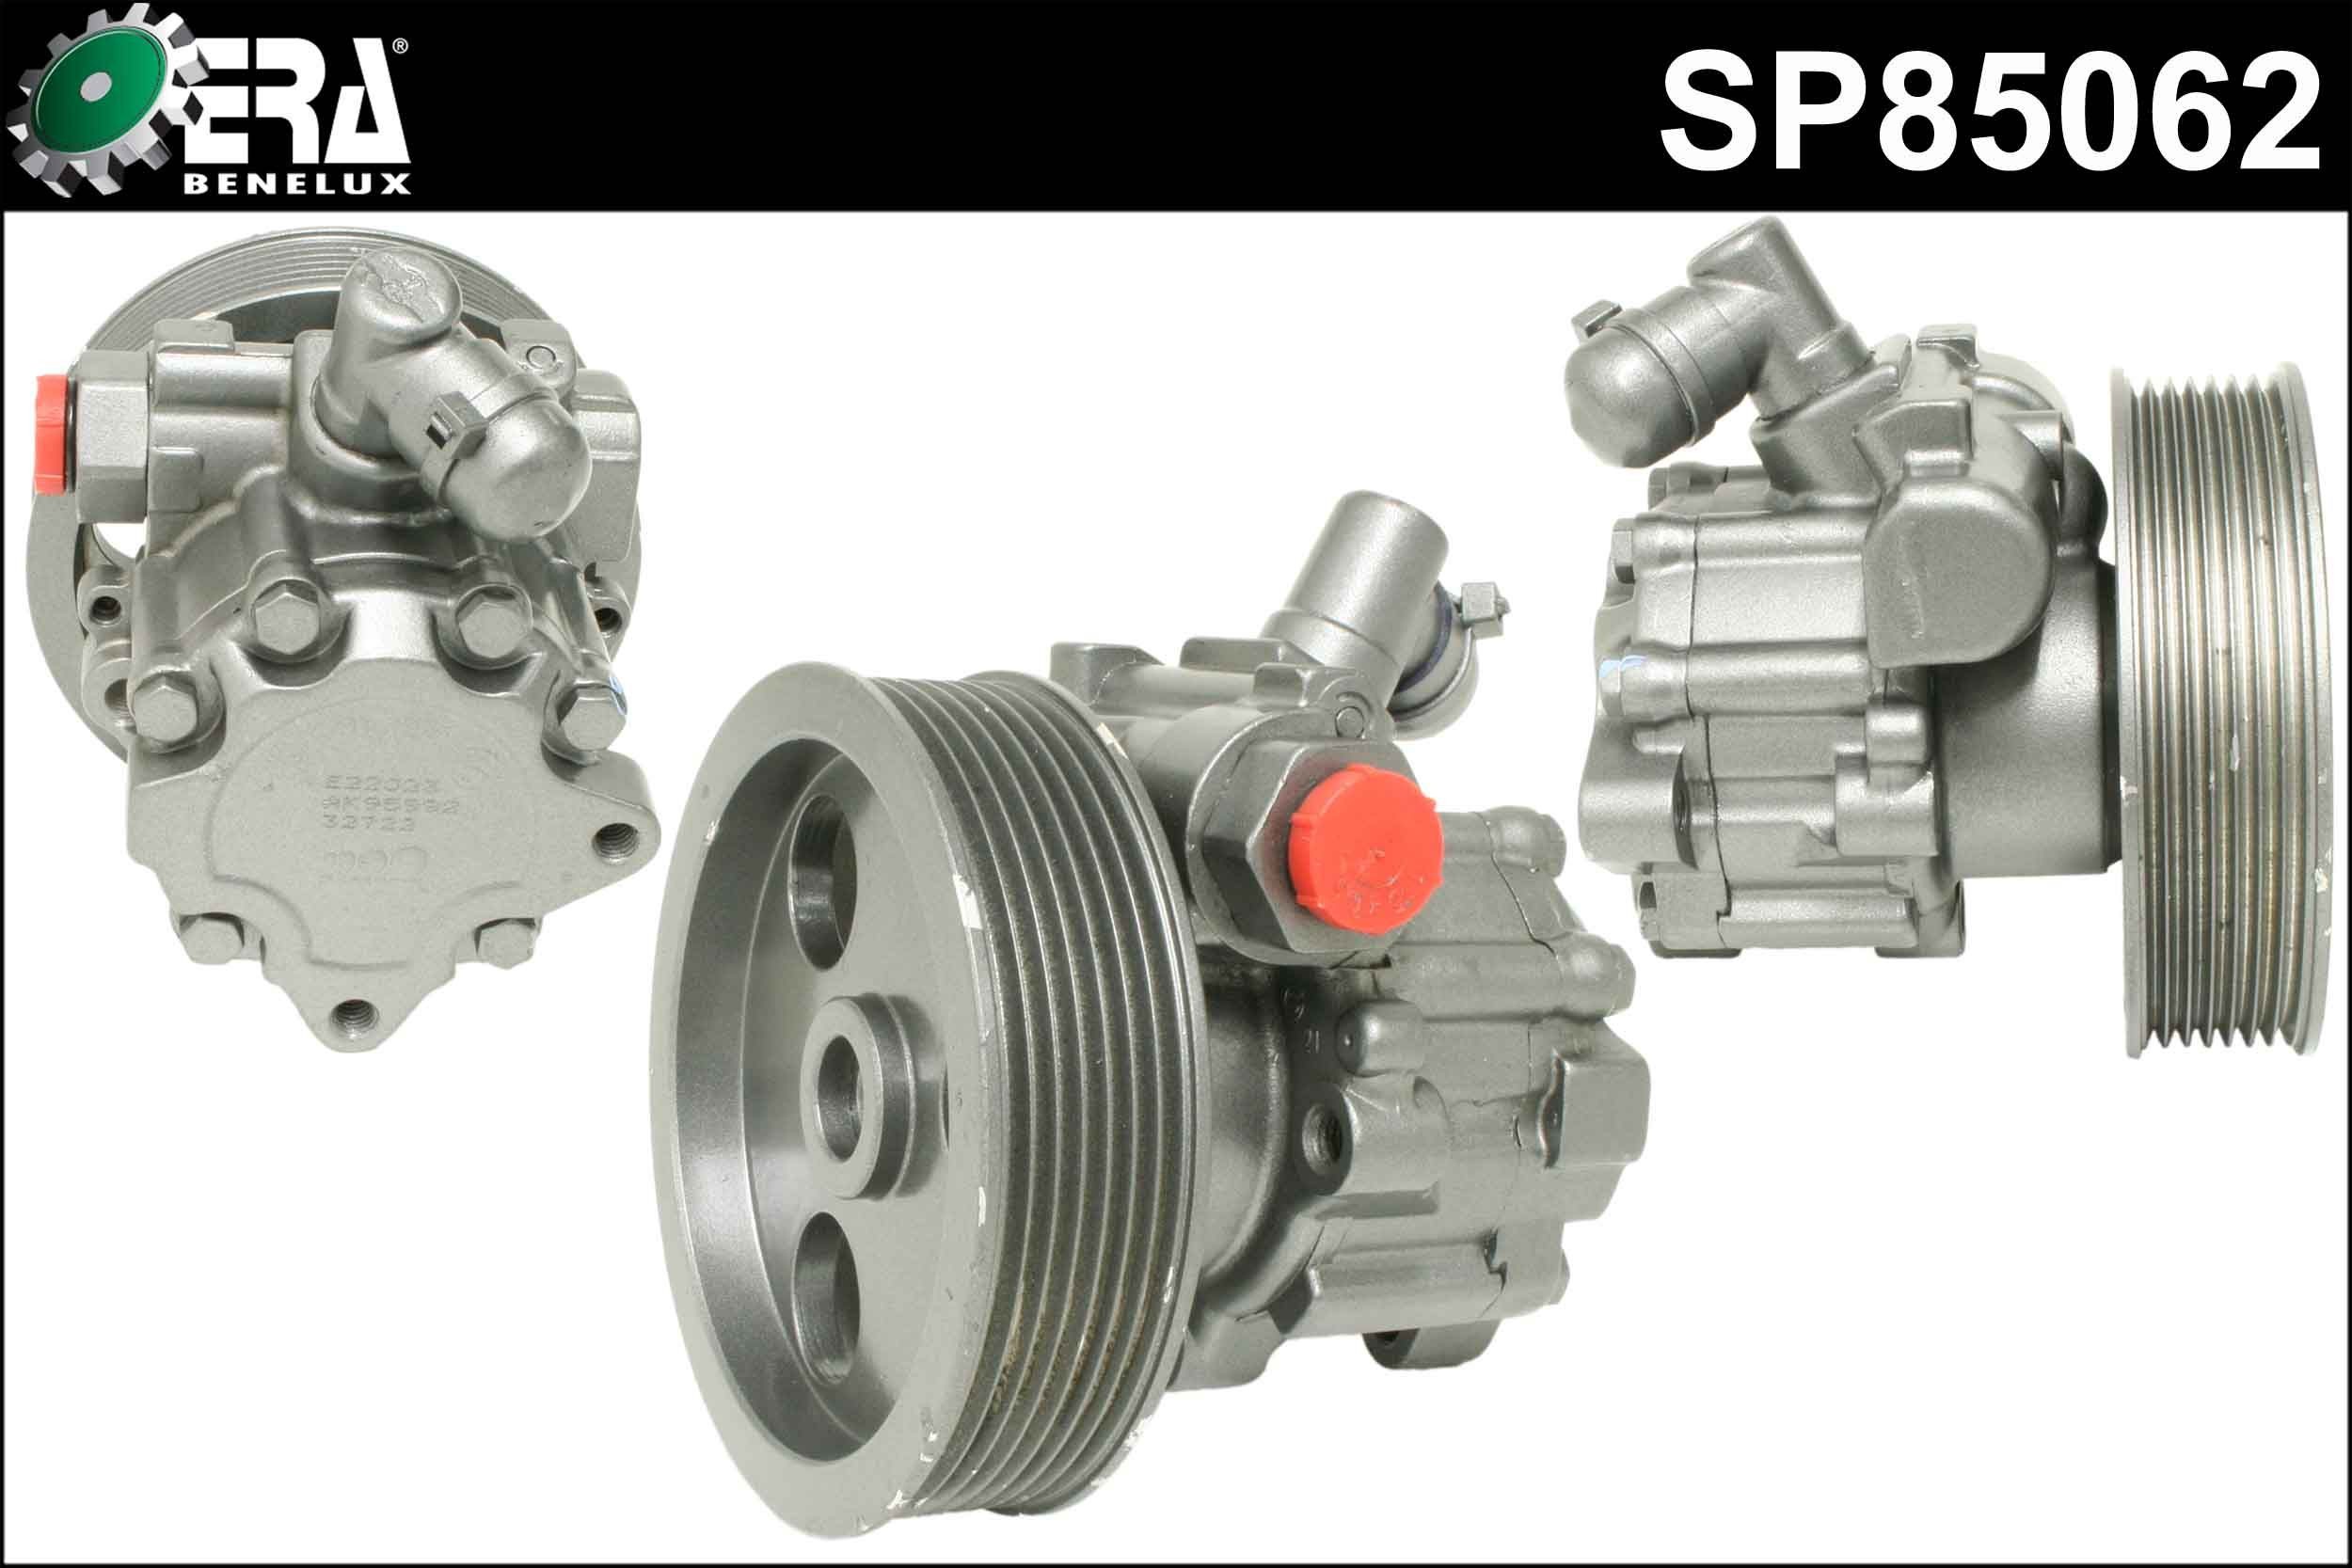 ERA Benelux SP85062 Steering pump W164 ML 320 CDI 4-matic 211 hp Diesel 2011 price